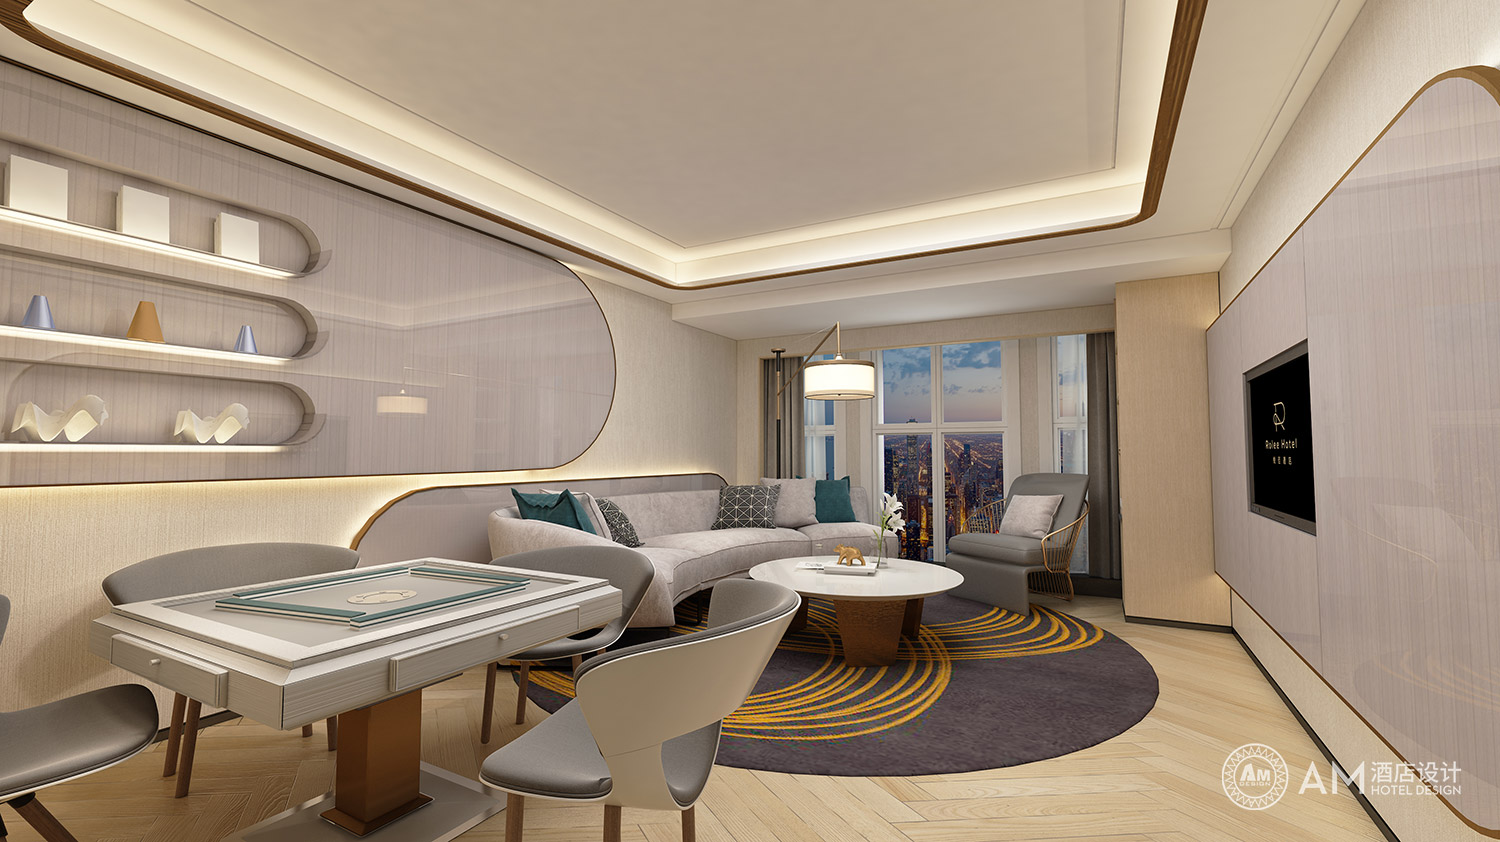 AM DESIGN | Yueli hotel design room design